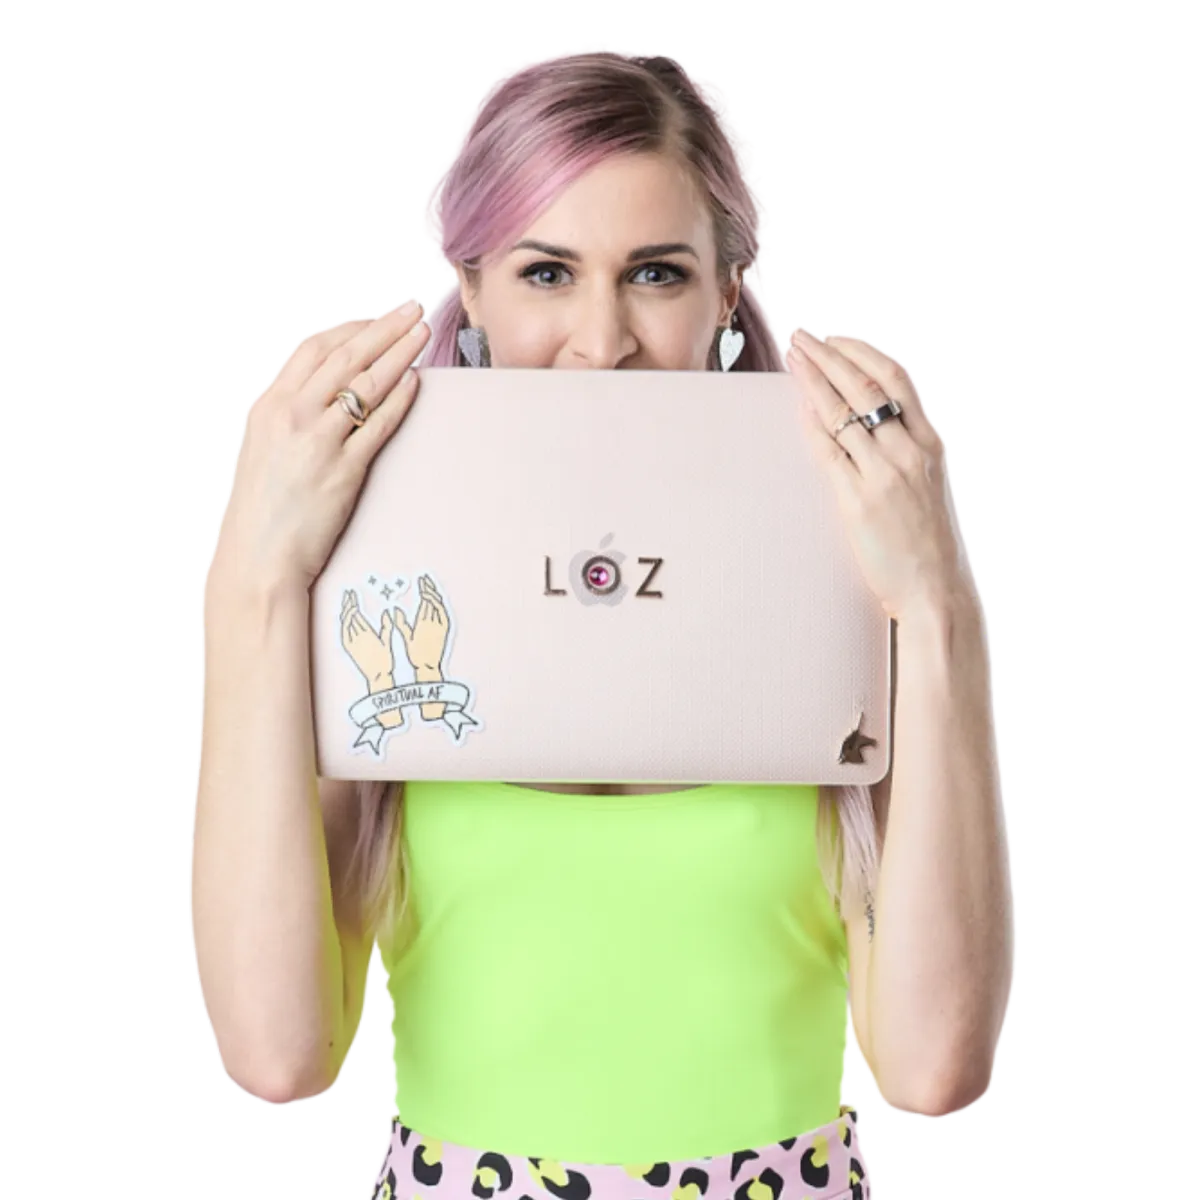 Loz Antonenko holding her laptop